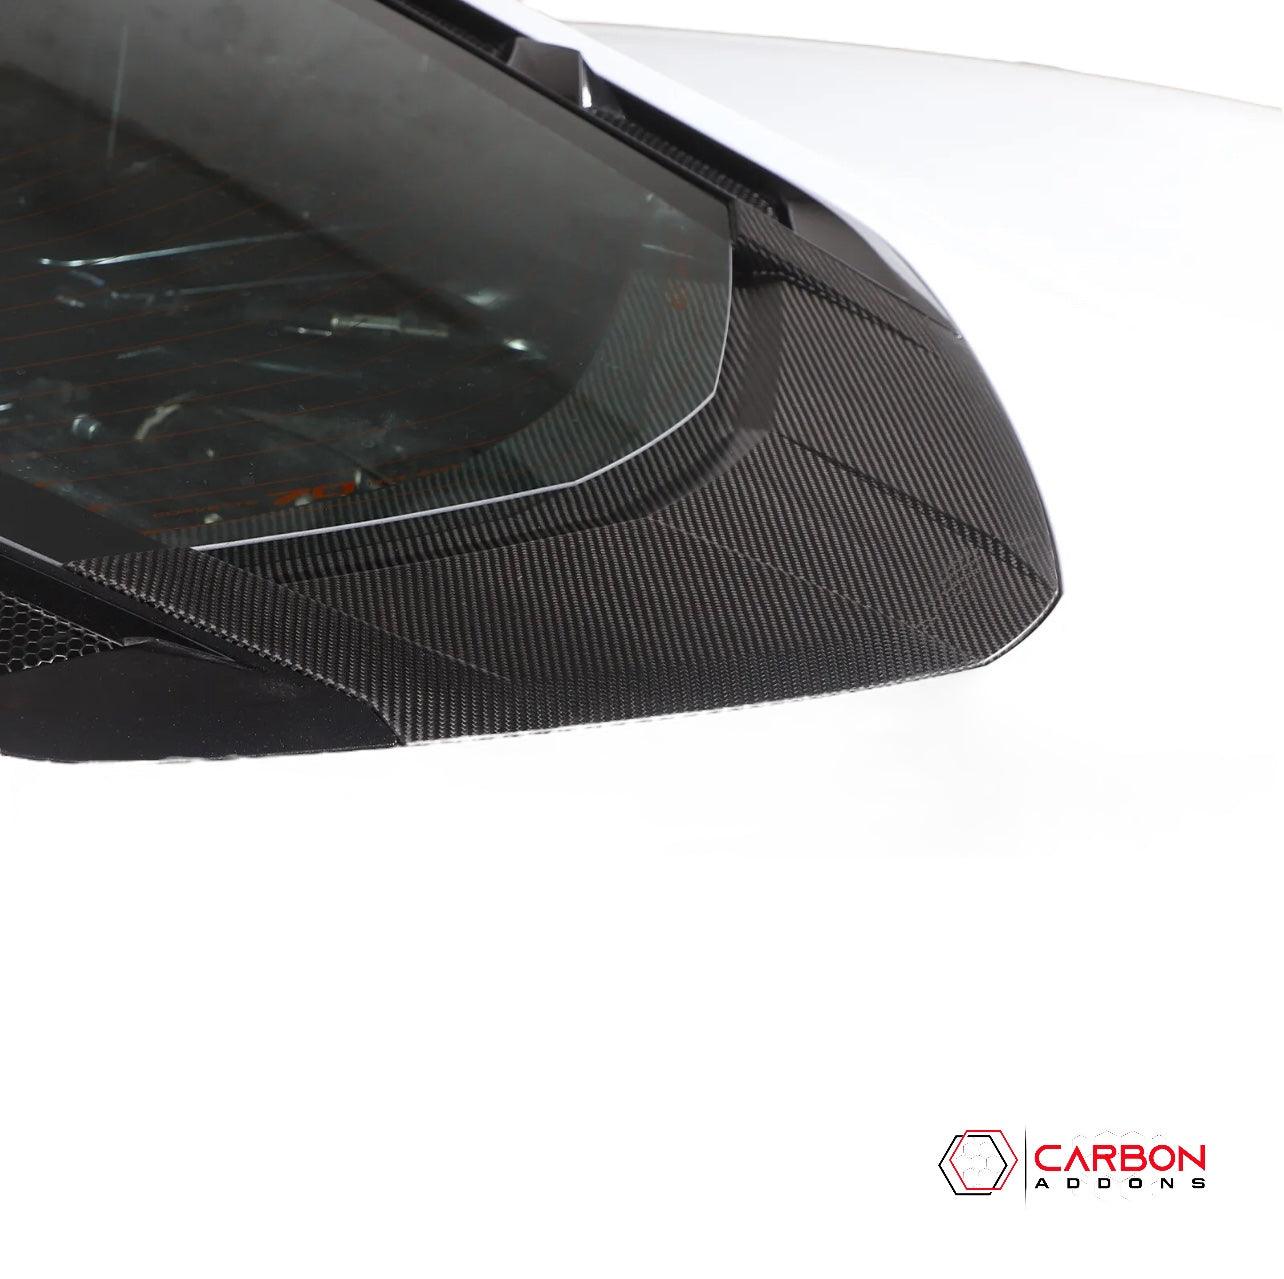 C8 Corvette Exterior Rear Lower Window Carbon Fiber Replacement Trim - carbonaddons Carbon Fiber Parts, Accessories, Upgrades, Mods